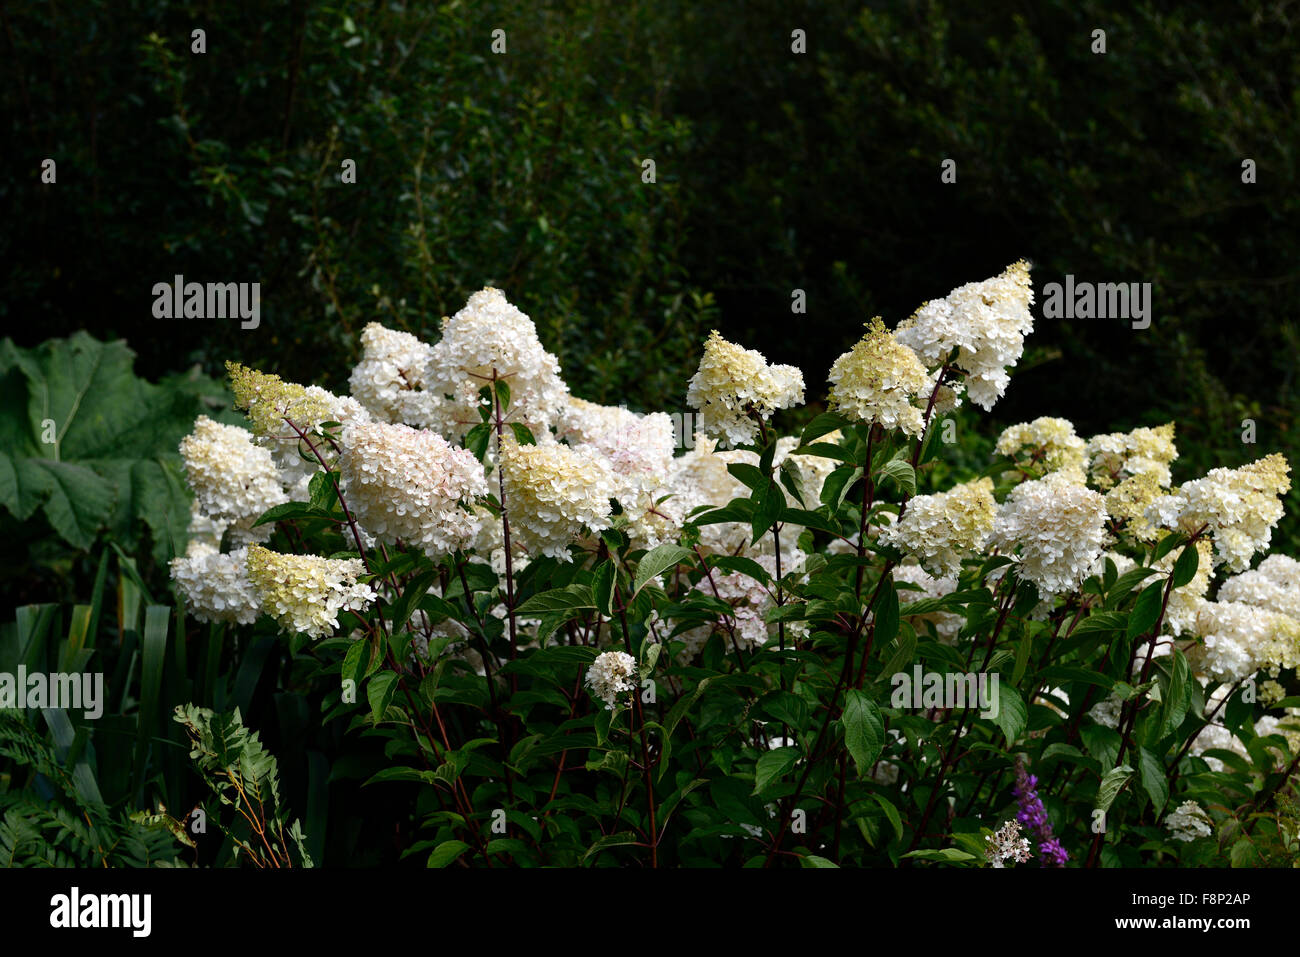 Hydrangea Paniculata Limelight blüht Blüte Blume weiß Schatten im schattigen Garten Gartenarbeit RM Floral Schatten Stockfoto